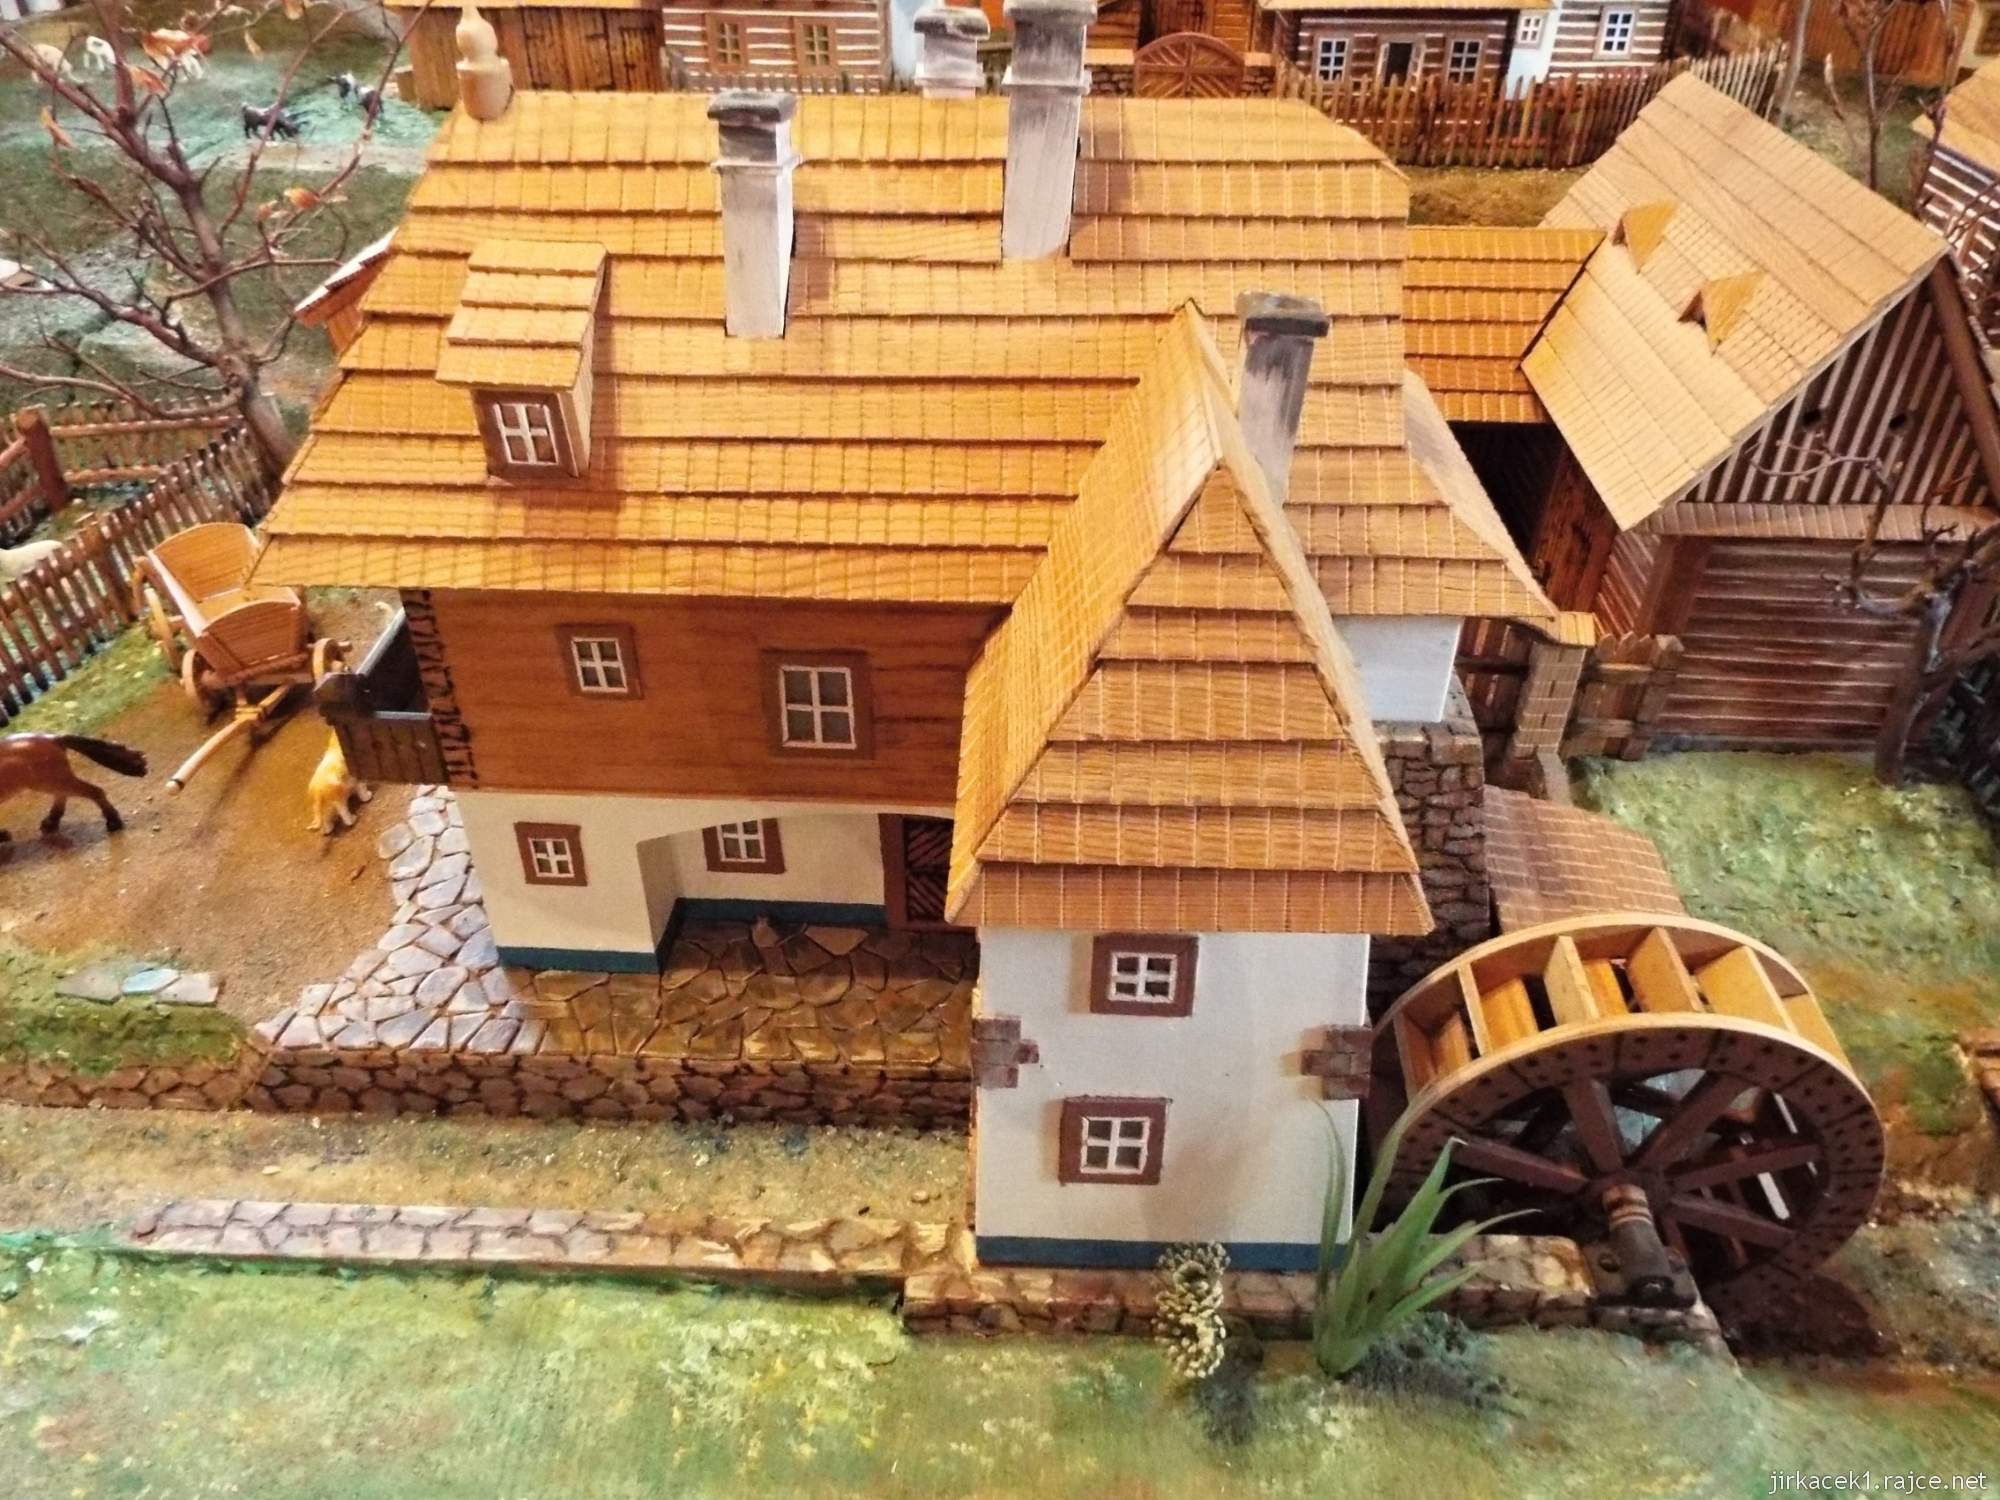 Muzeum Horní Smržov 22 - druhá místnost - model vesnice